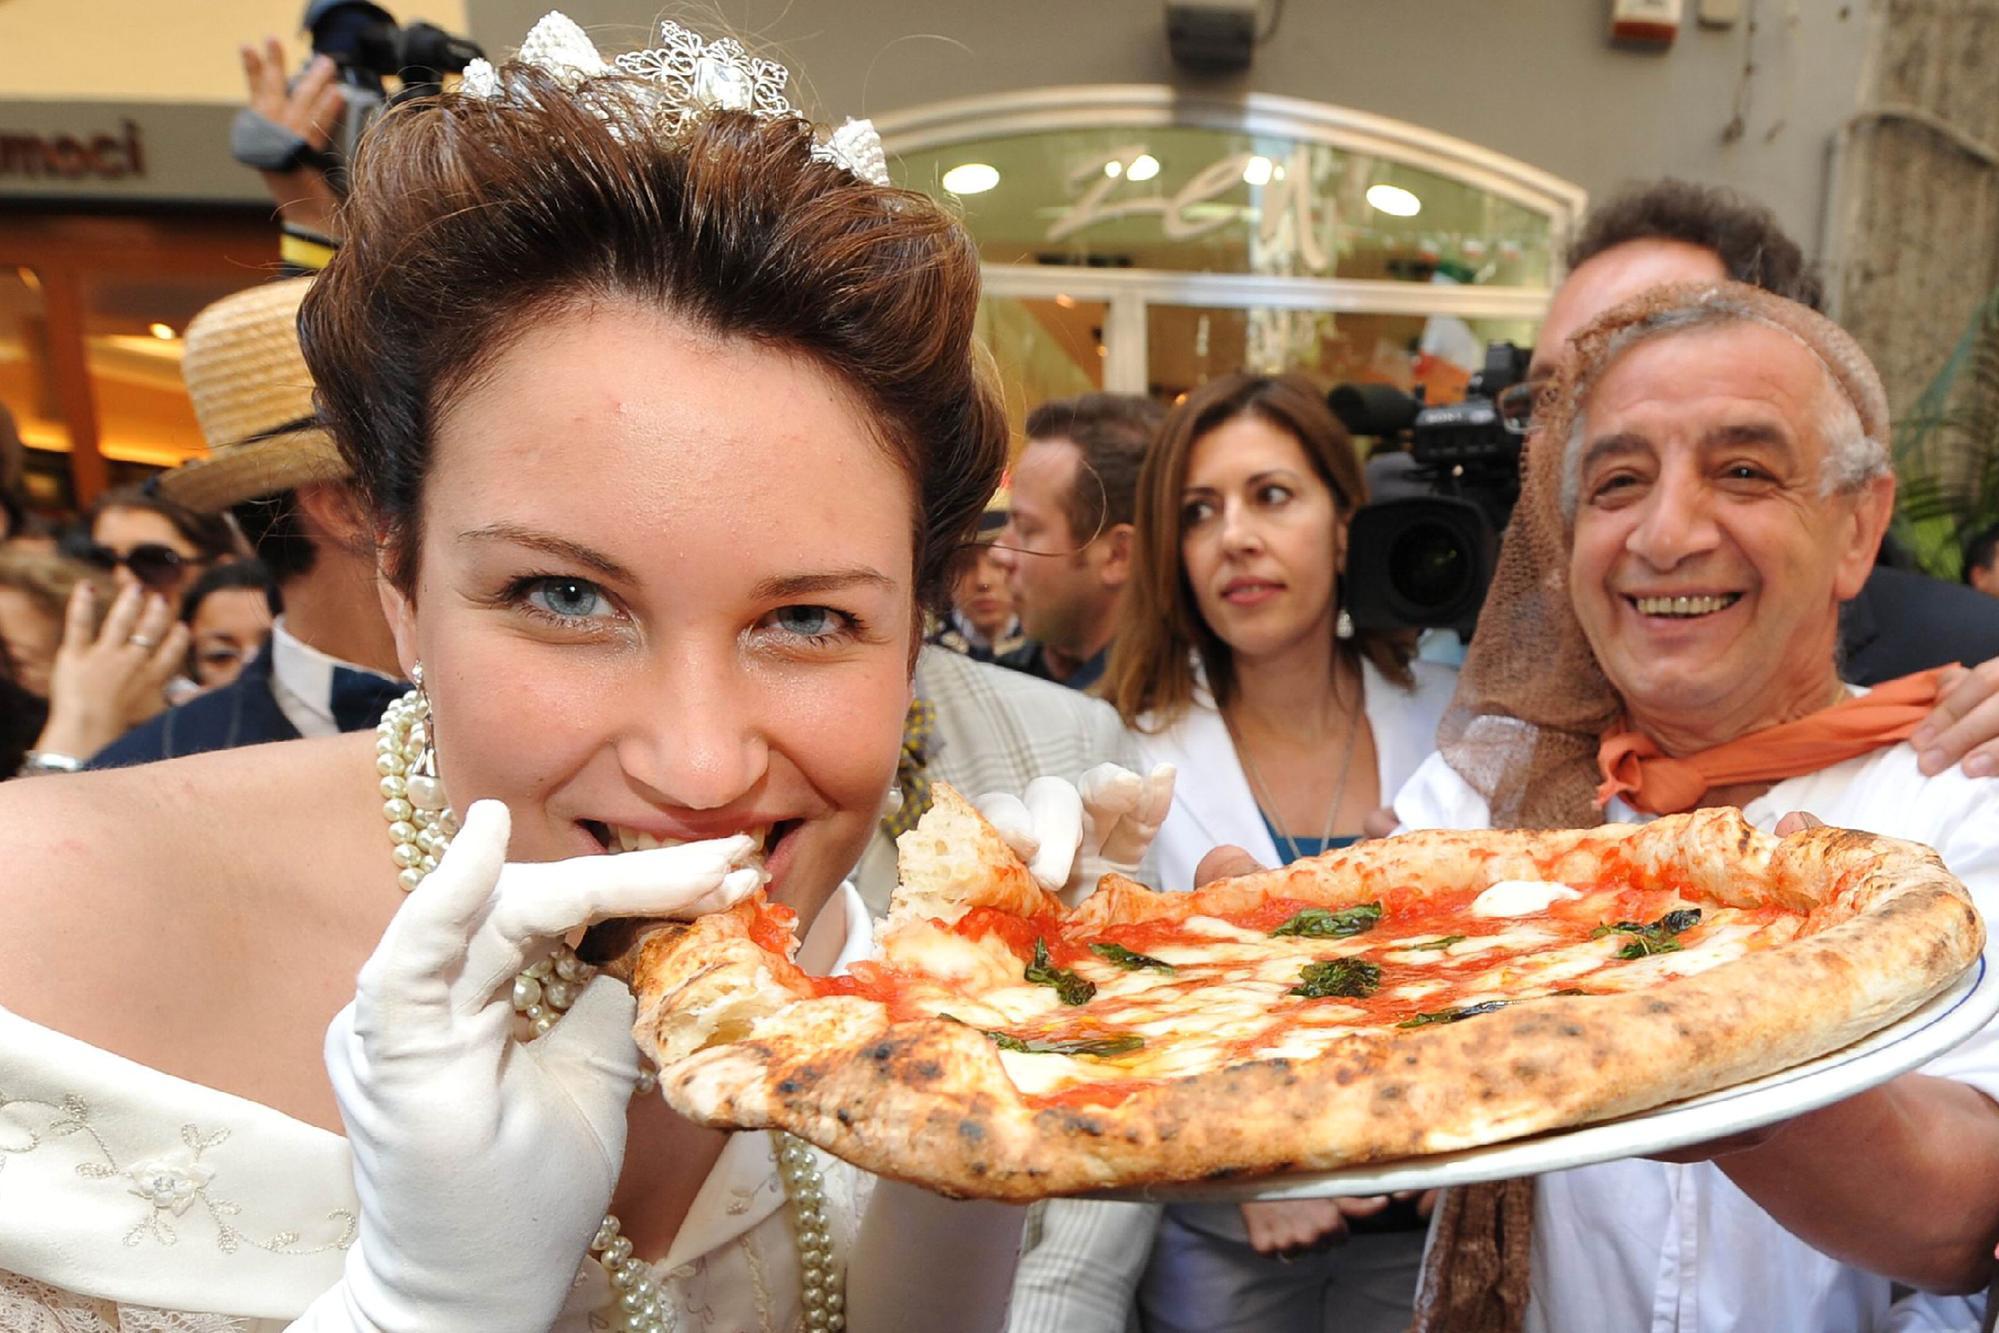 Una margherita per entrare nella storia: il mondo celebra il piatto iconico dell’Italia